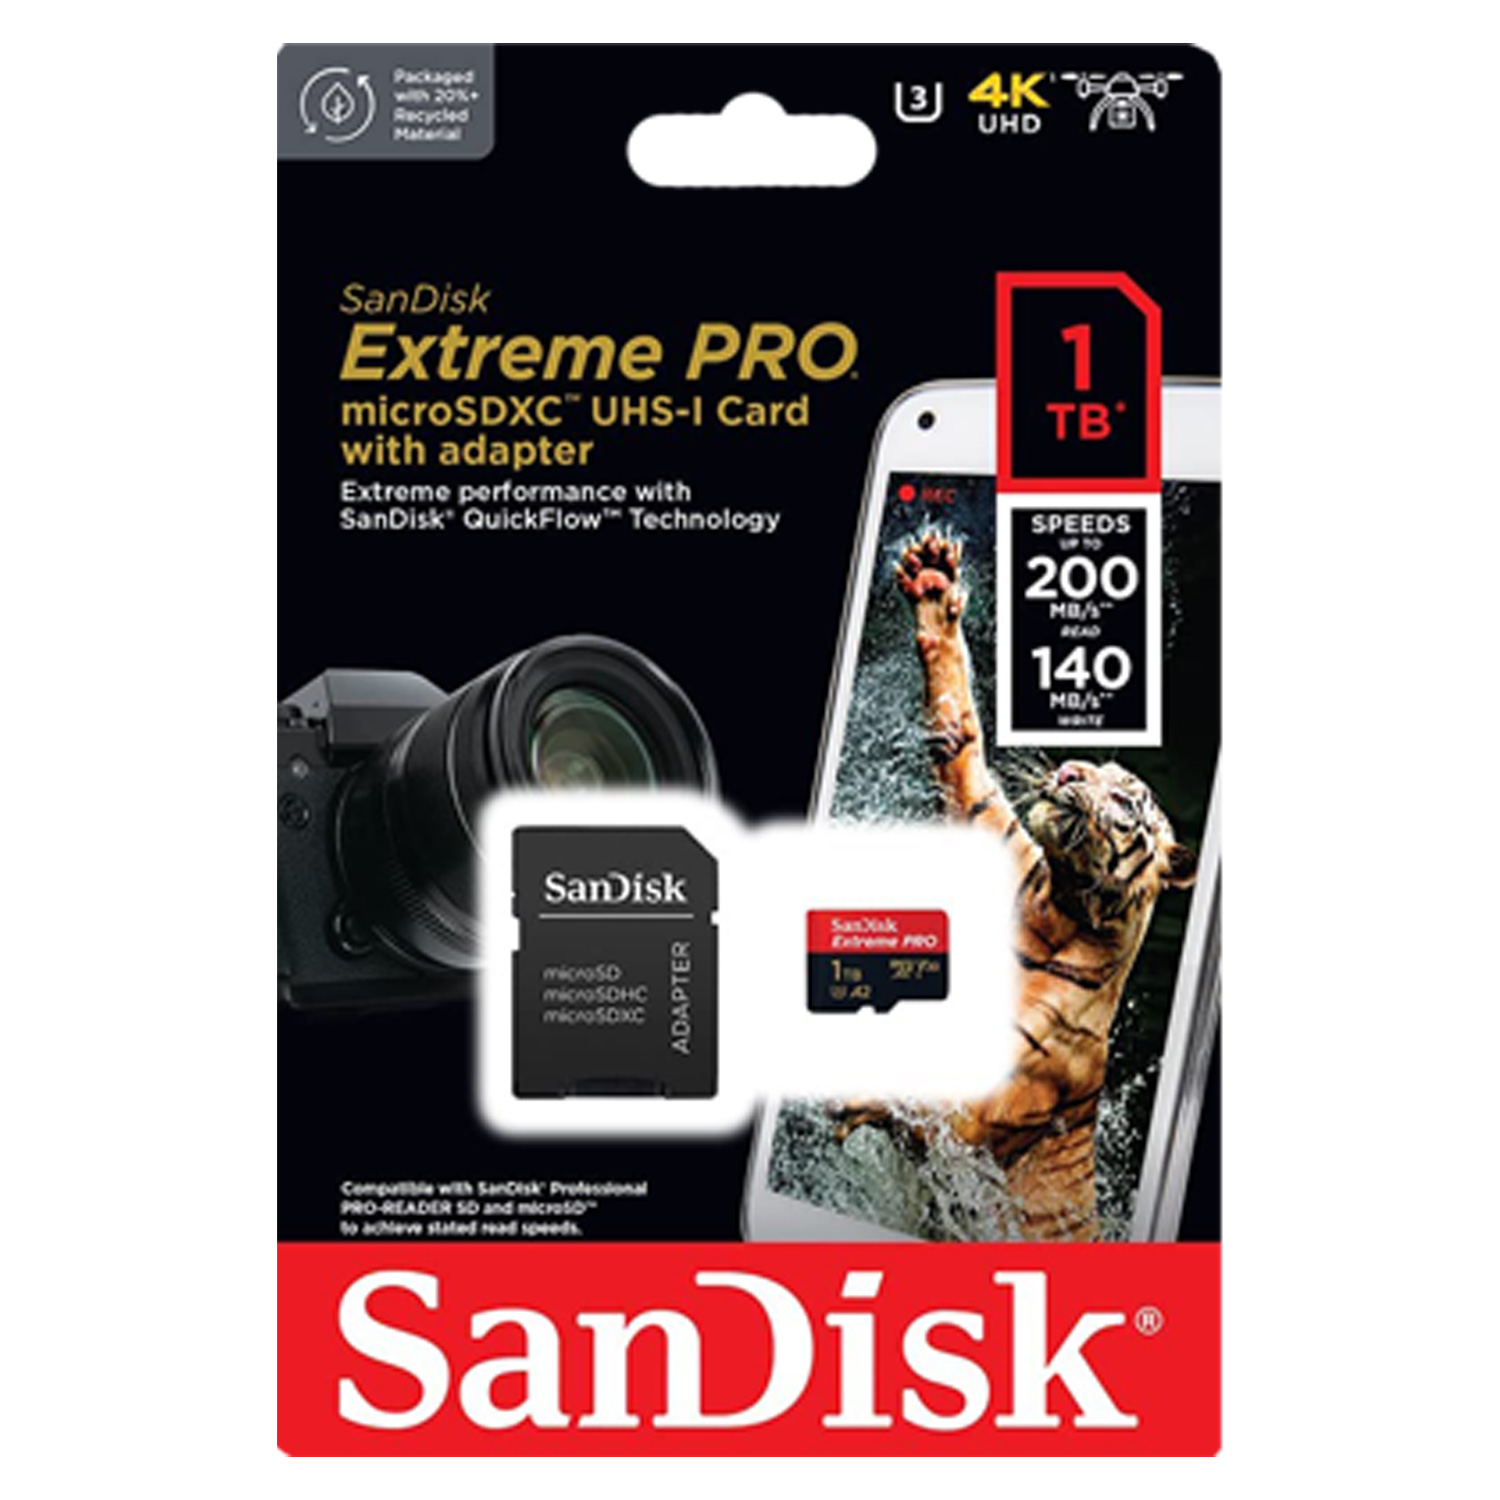 Cartão de Memória Micro SD Sandisk Extreme Pro 1TB 
- (SDSQXCD-1TB-GN6MA)
